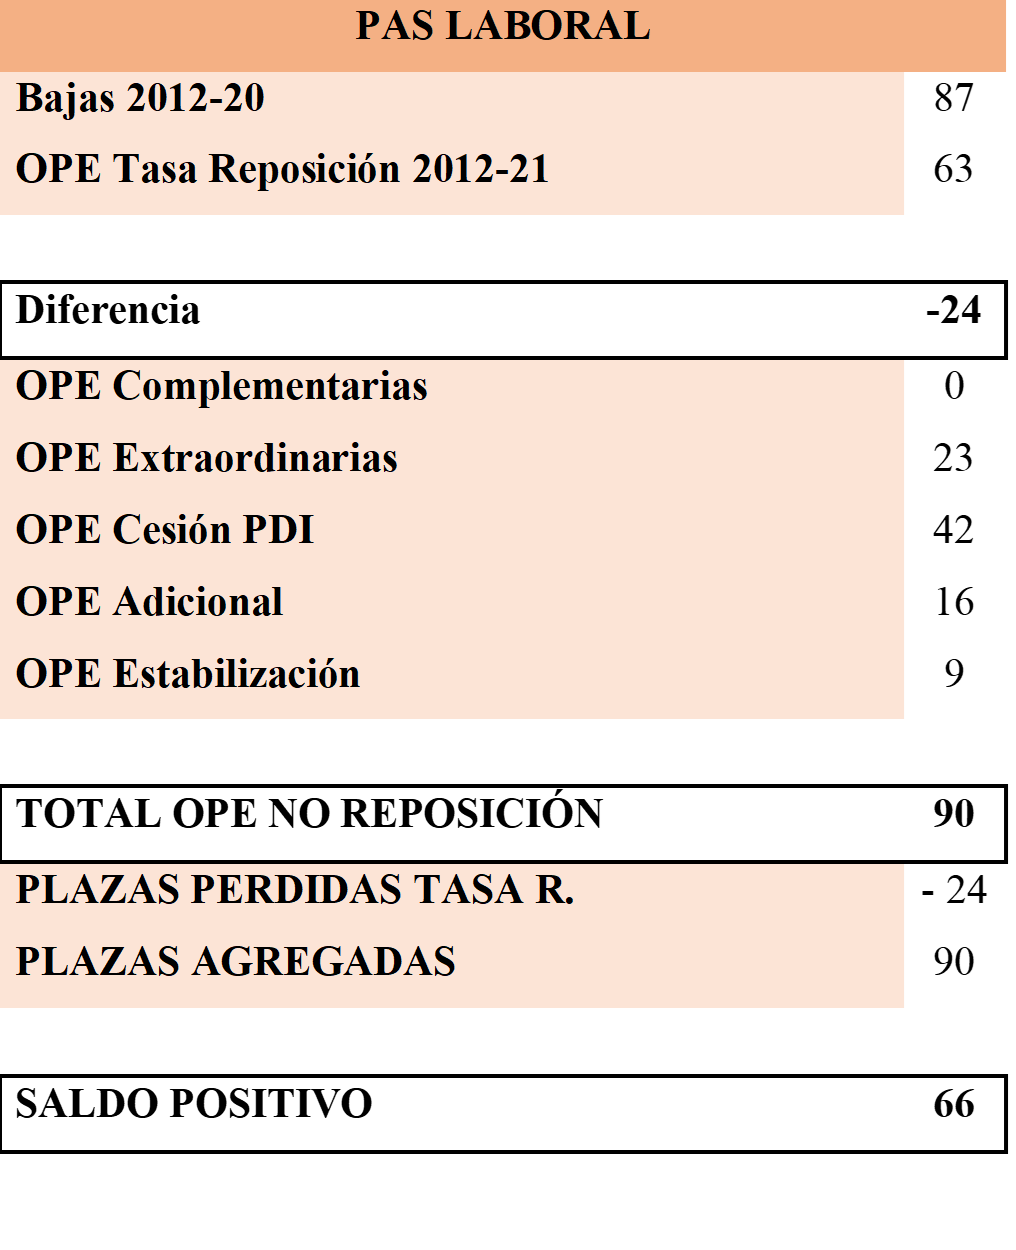 Plazas OPEs vs Tasa de Reposicion